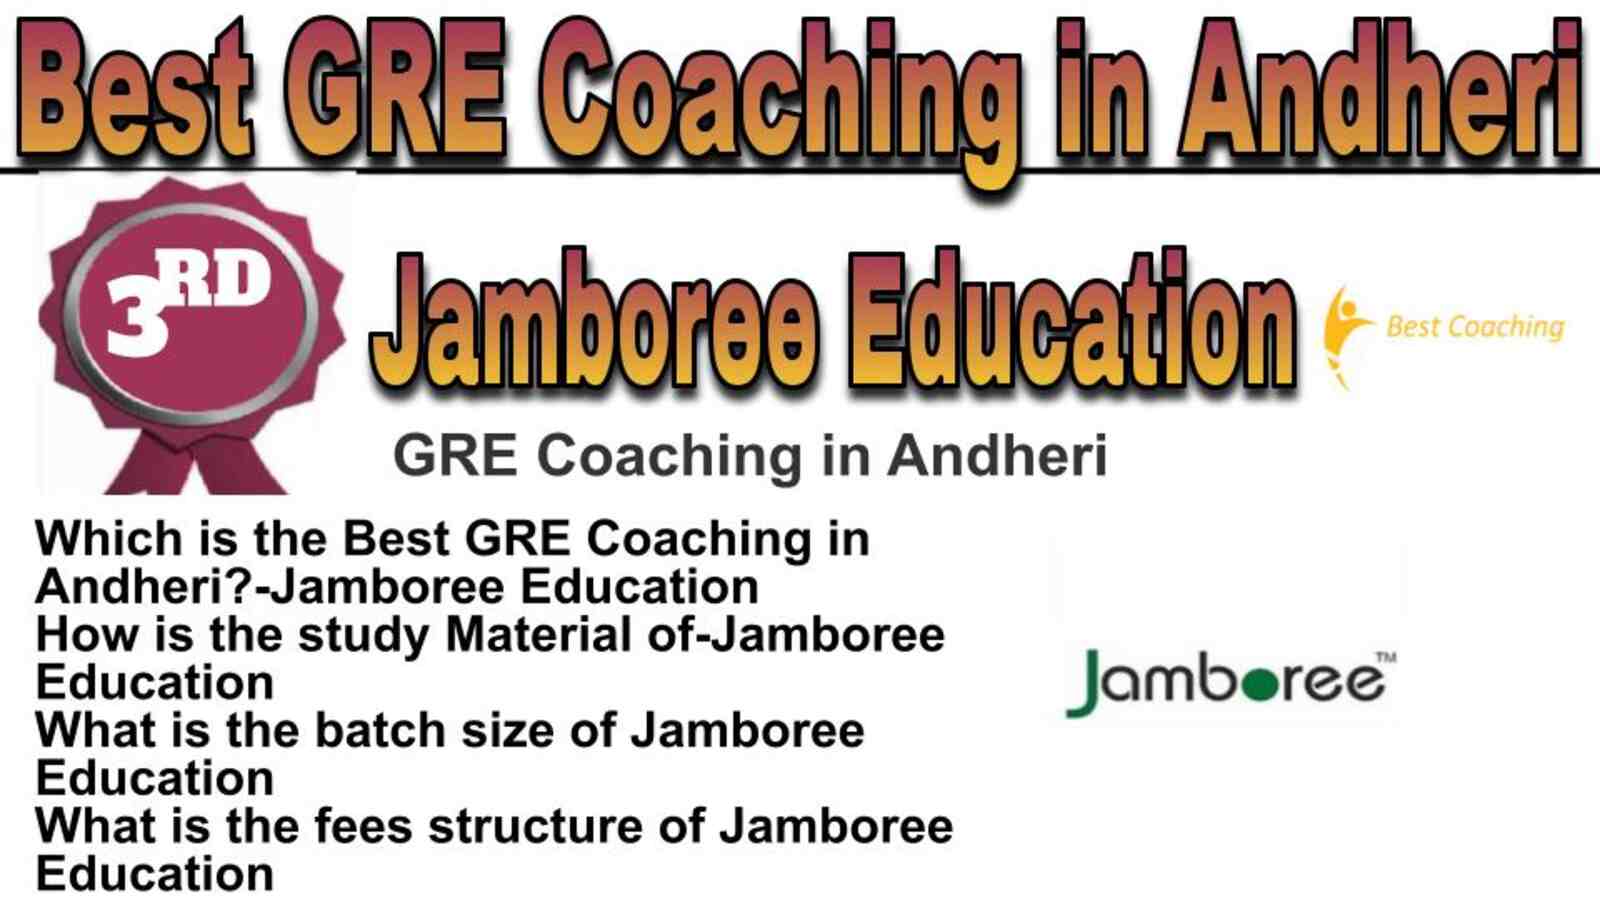 Rank 3 best GRE coaching in Andheri